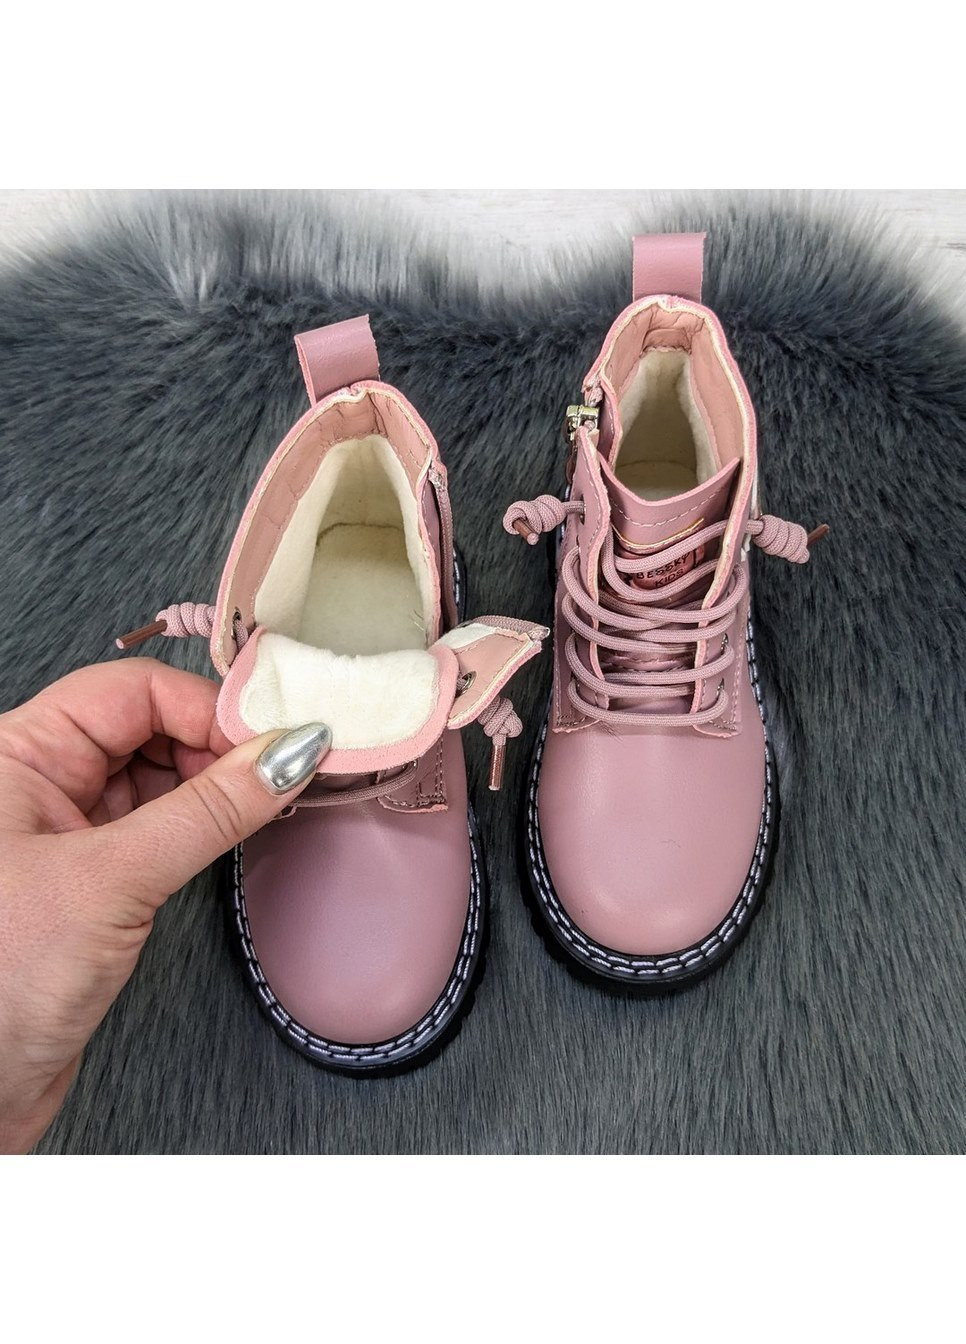 Пудровые повседневные осенние ботинки детские для девочки демисезонные Bessky